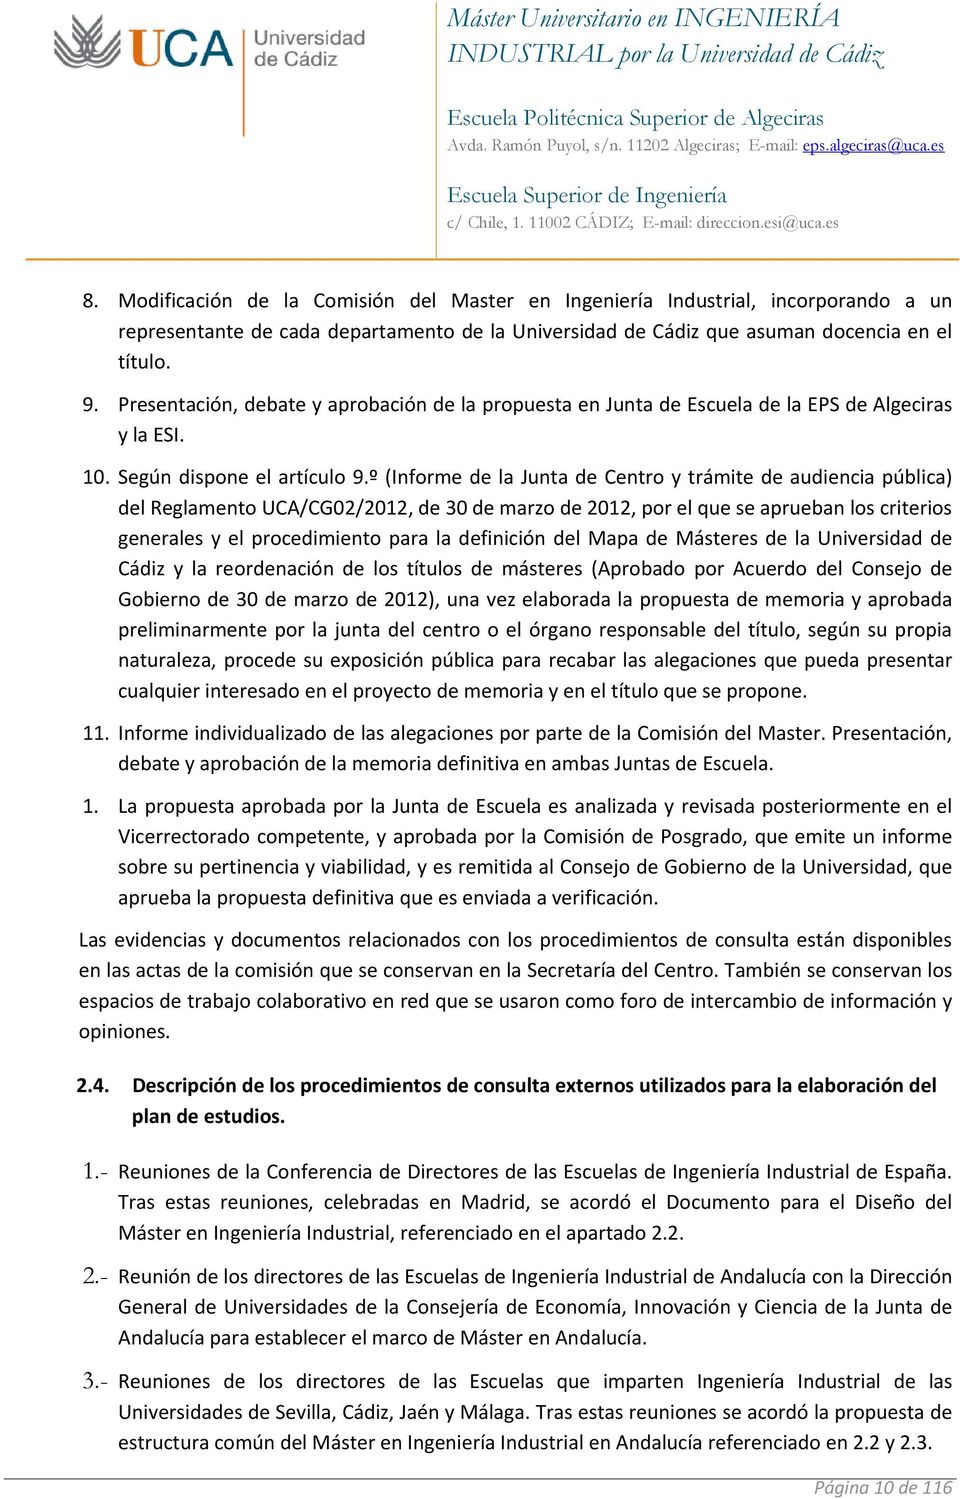 º (Informe de la Junta de Centro y trámite de audiencia pública) del Reglamento UCA/CG02/2012, de 30 de marzo de 2012, por el que se aprueban los criterios generales y el procedimiento para la